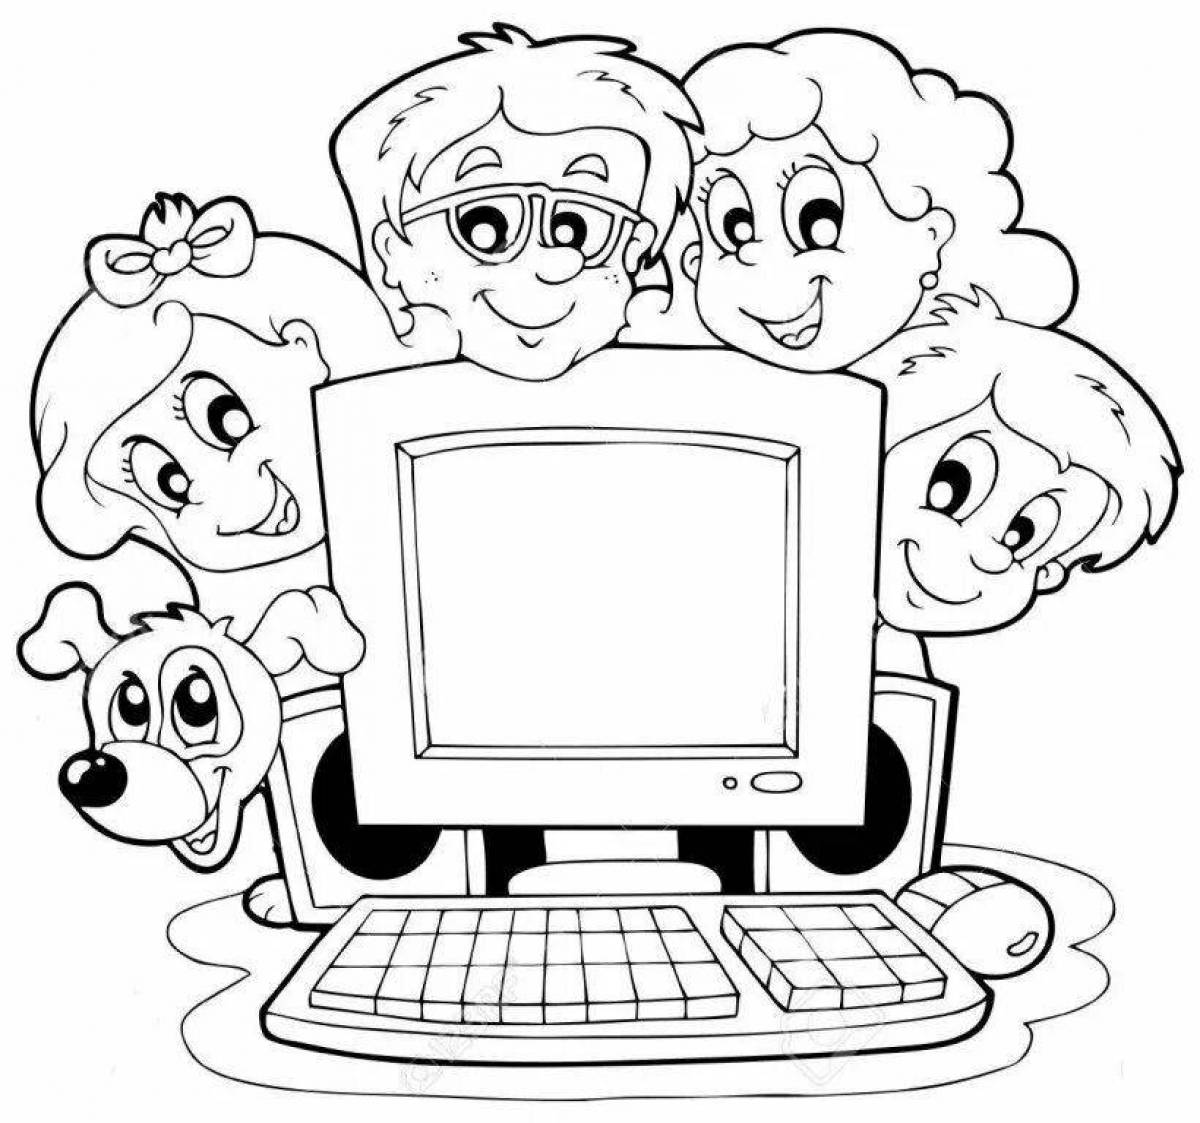 Развлекательная страница-раскраска «безопасный интернет» для детей начальной школы